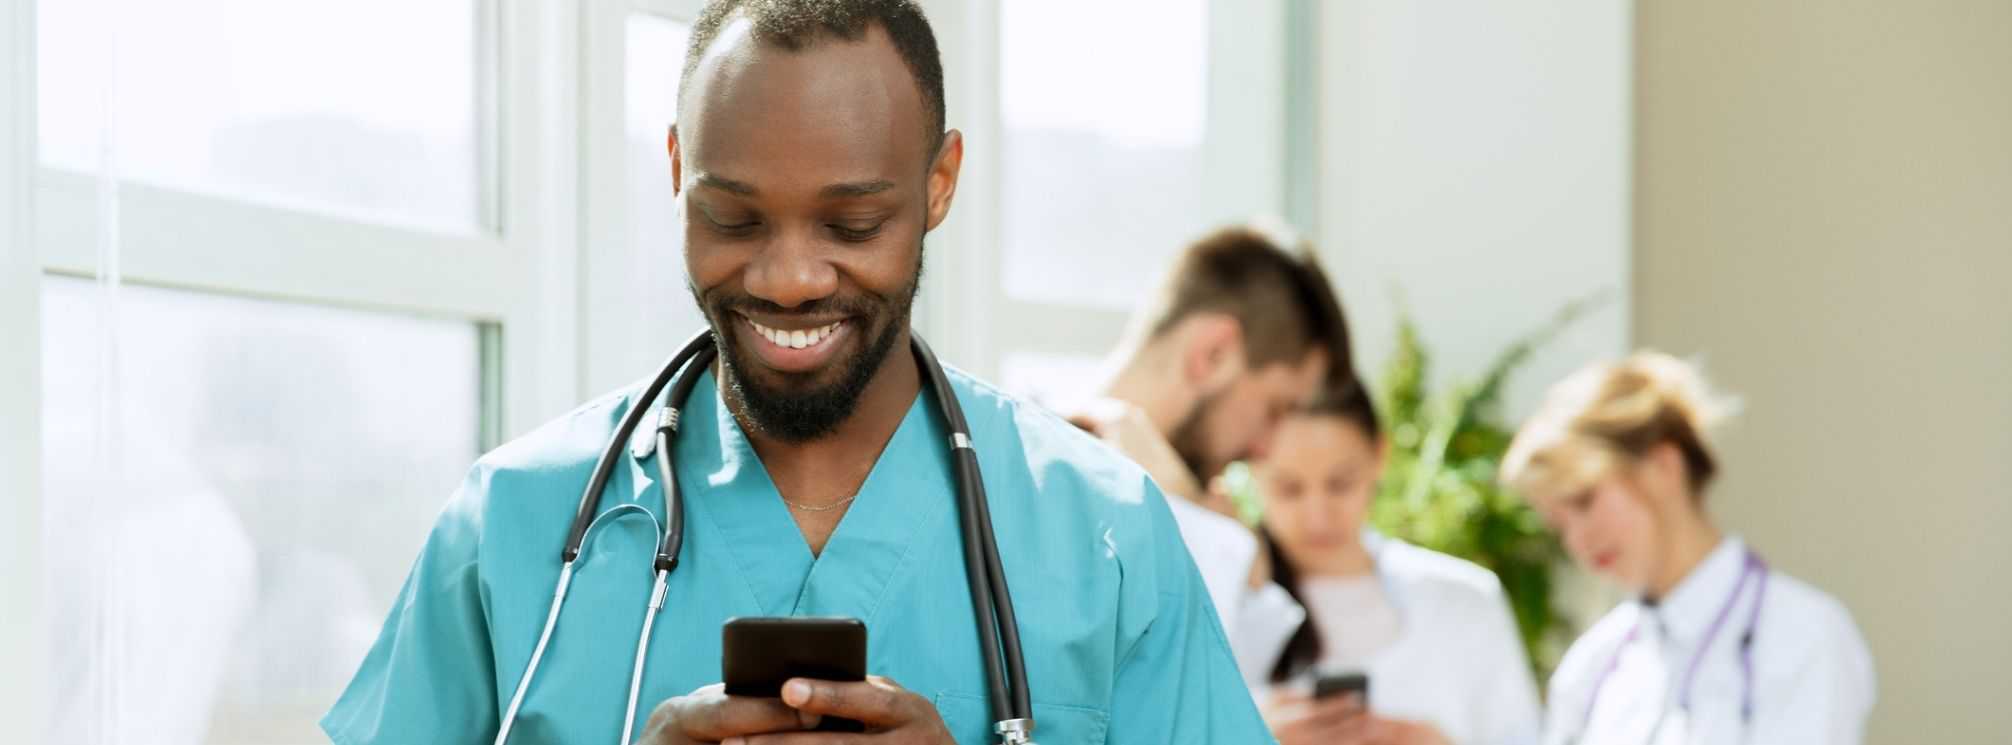 frontline healthcare worker using employee app